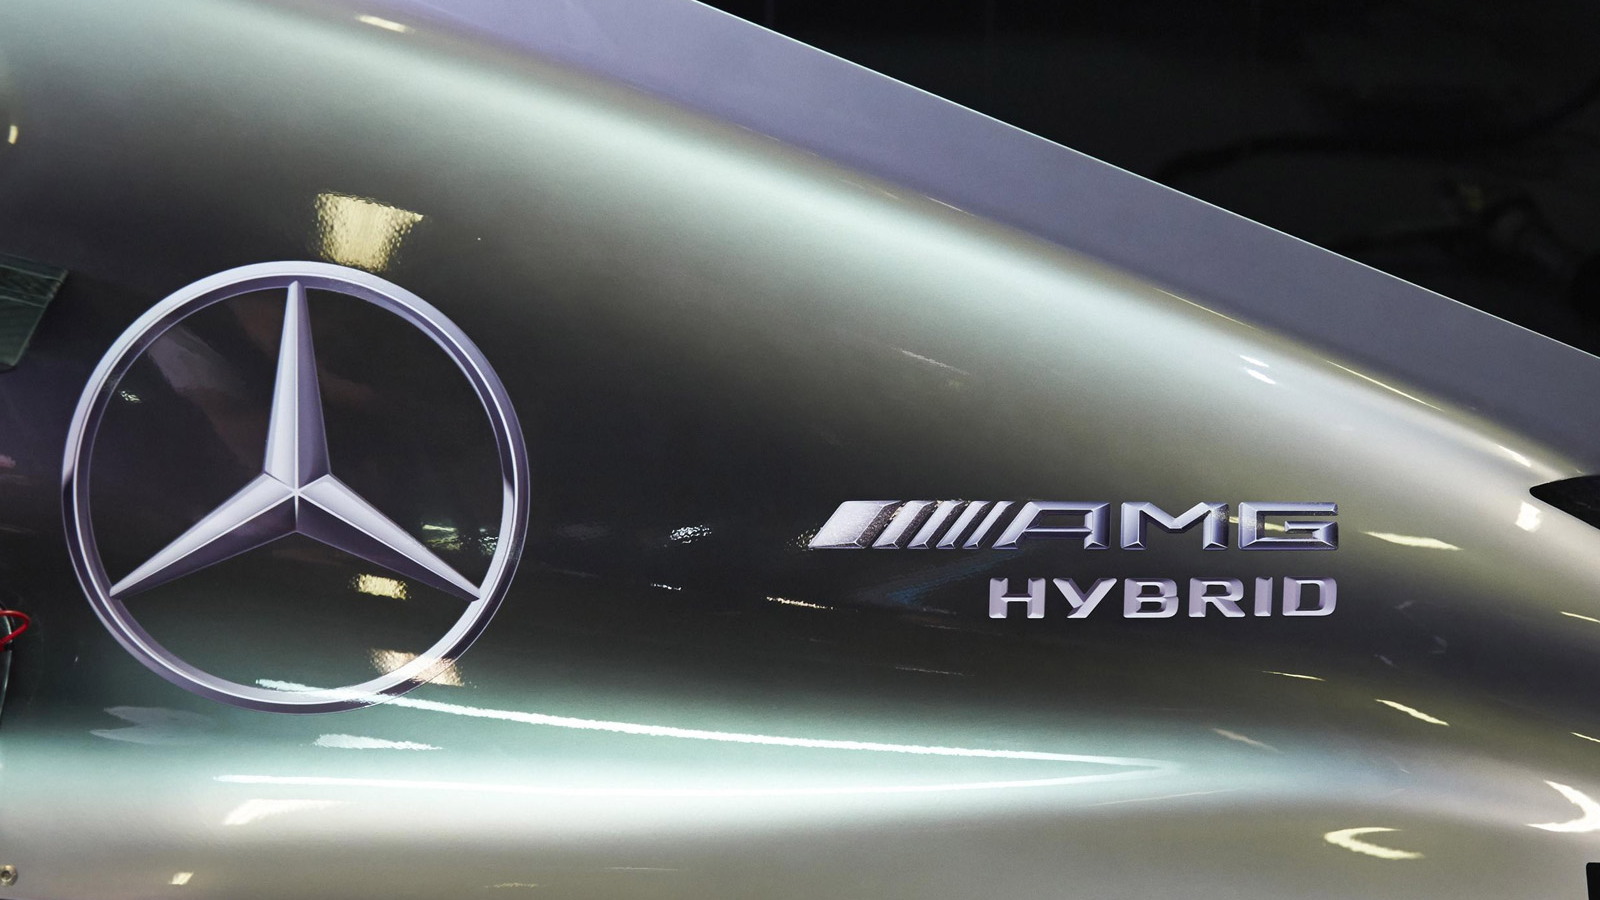 Mercedes AMG's W05 Hybrid 2014 Formula One car